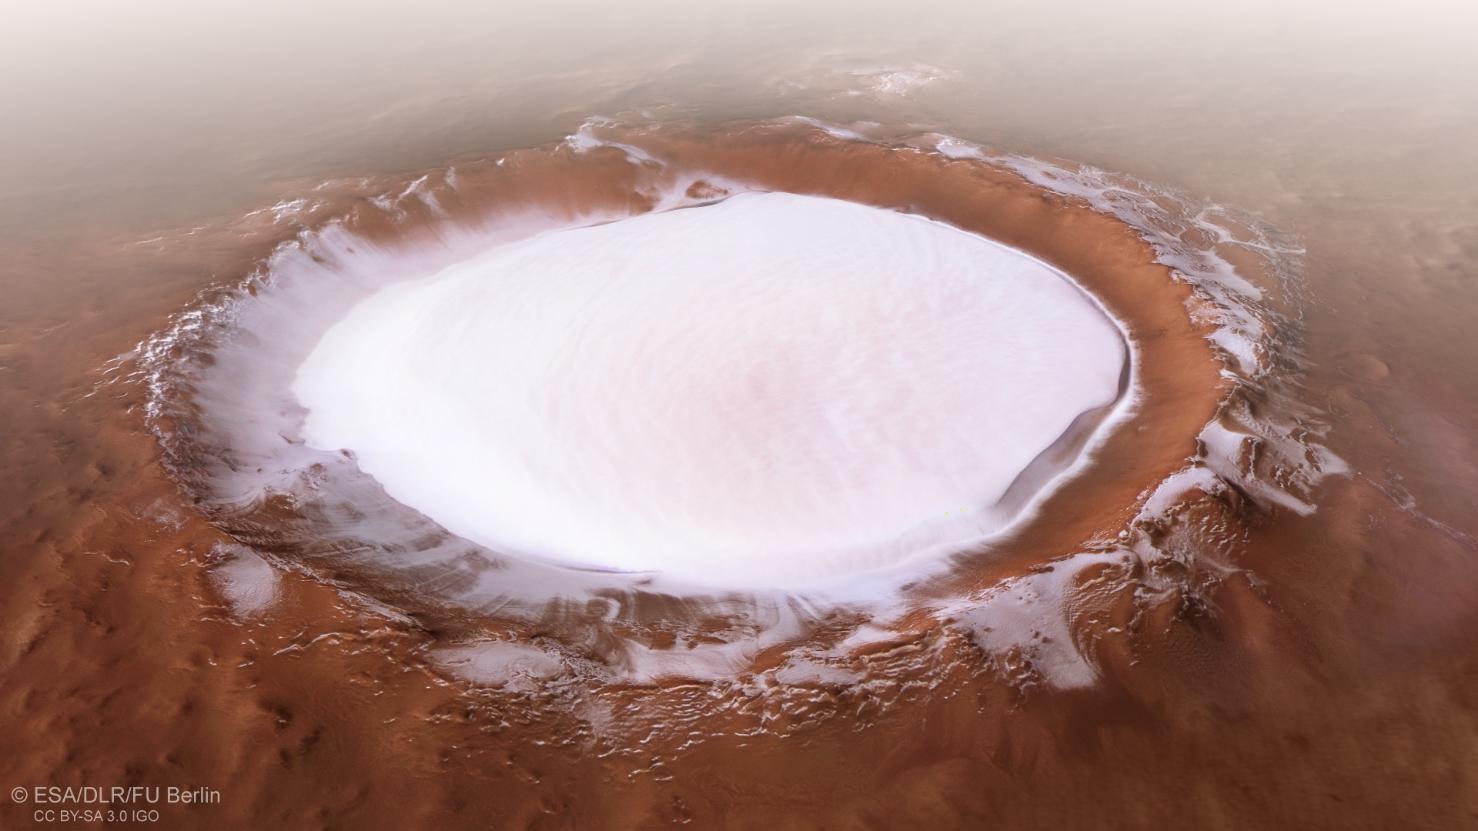 Regards sur le système solaire : un cratère martien sous la glace